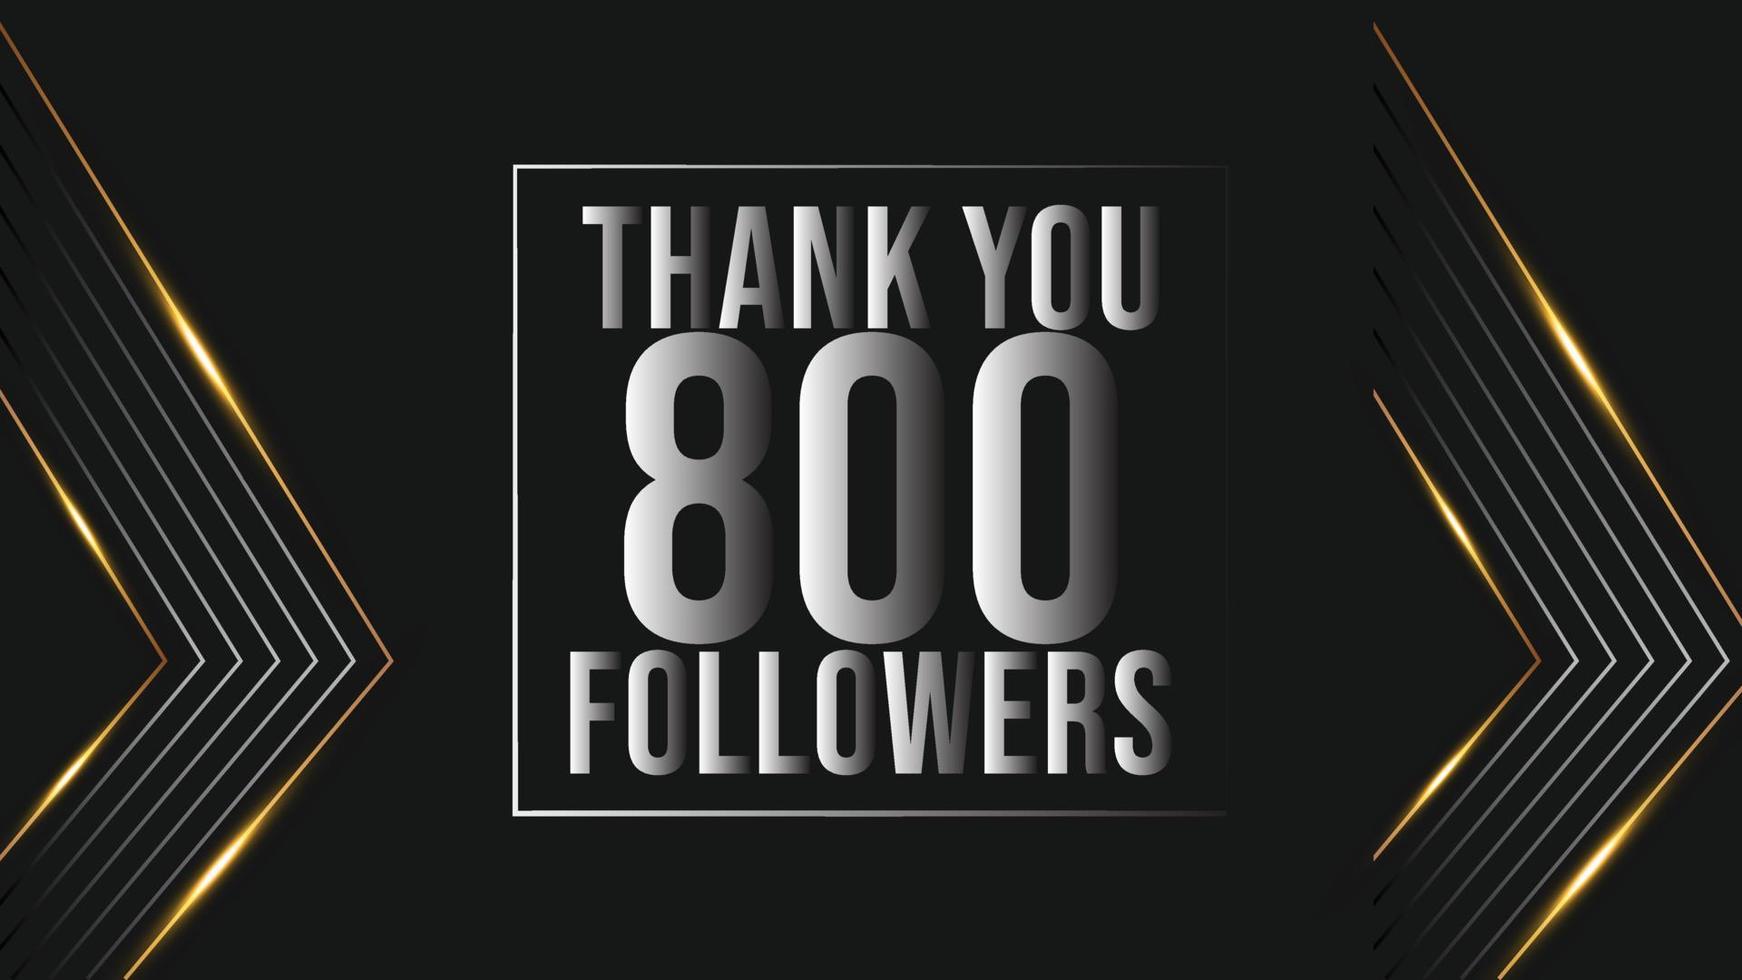 gracias 800 seguidores banner de plantilla de felicitación. ochocientos seguidores celebración 800 plantilla de suscriptores para redes sociales vector